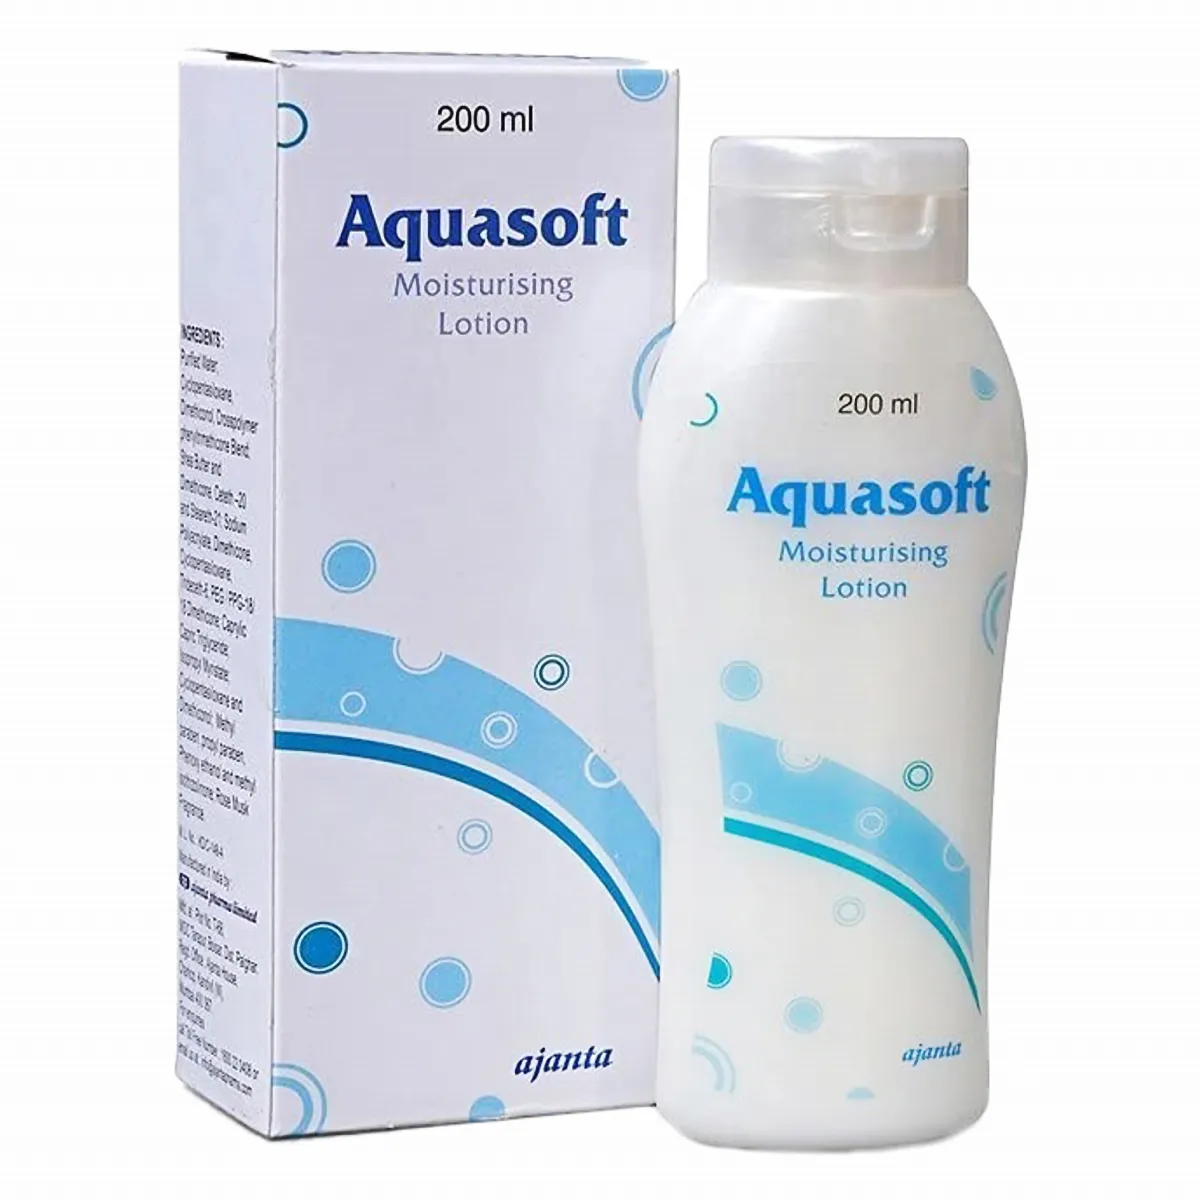 Aquasoft Moisturising Lotion | Nourishes & Softens the Skin | Paraben-Free